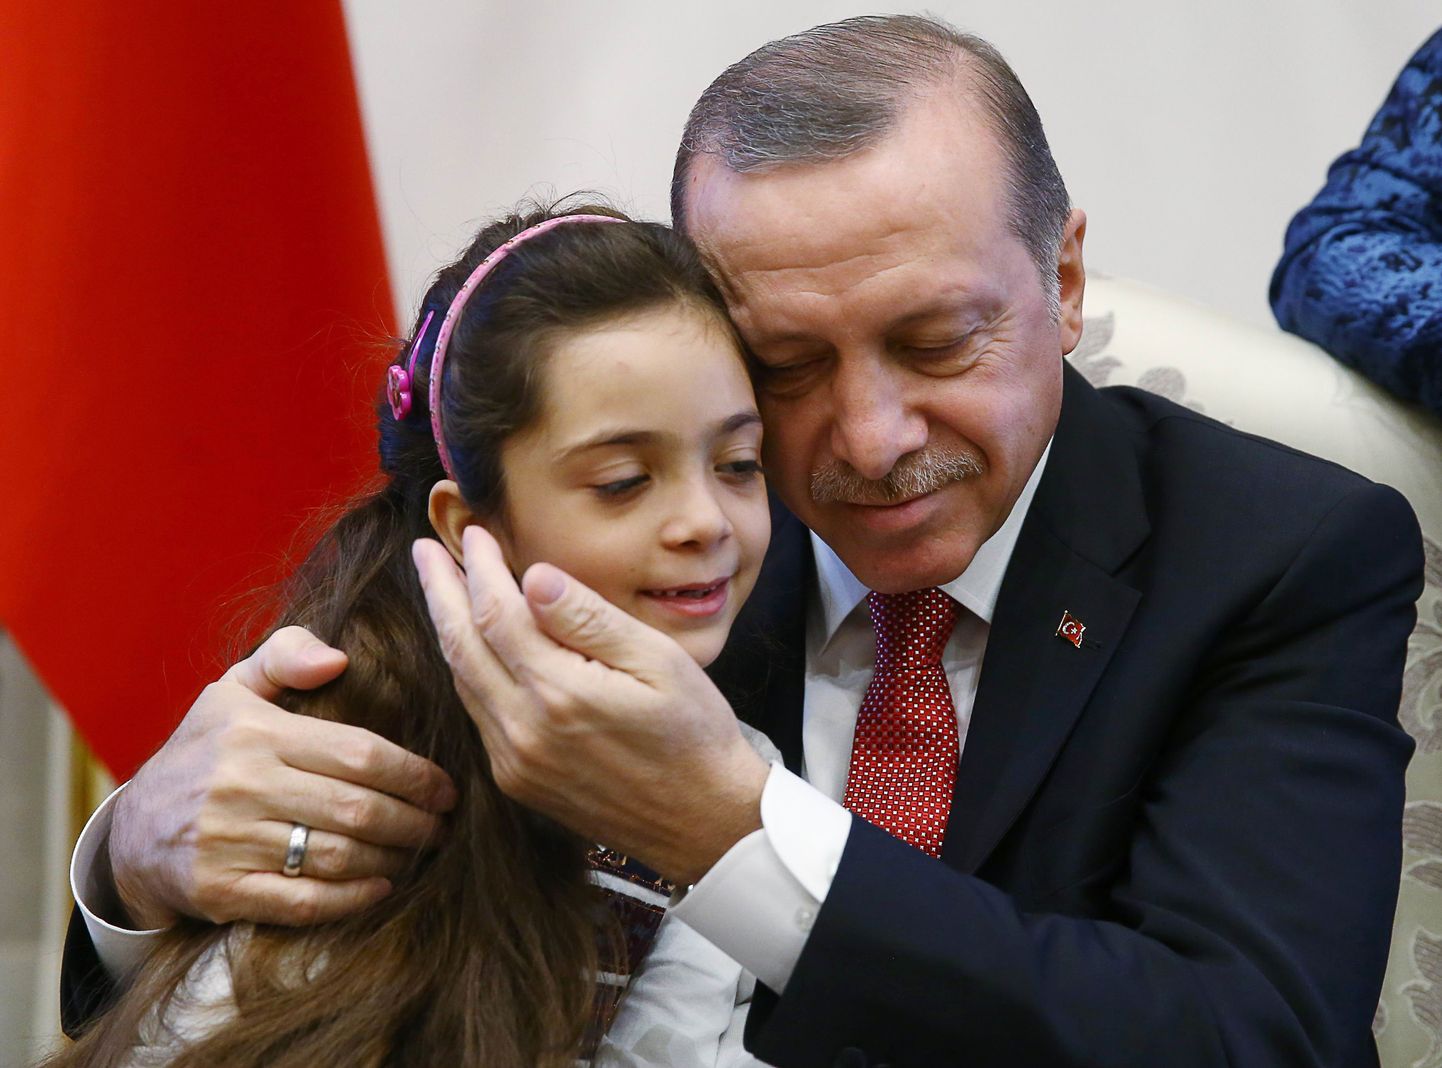 Бана Алабед с президентом Турции Реджепом Тайипом Эрдоганом.